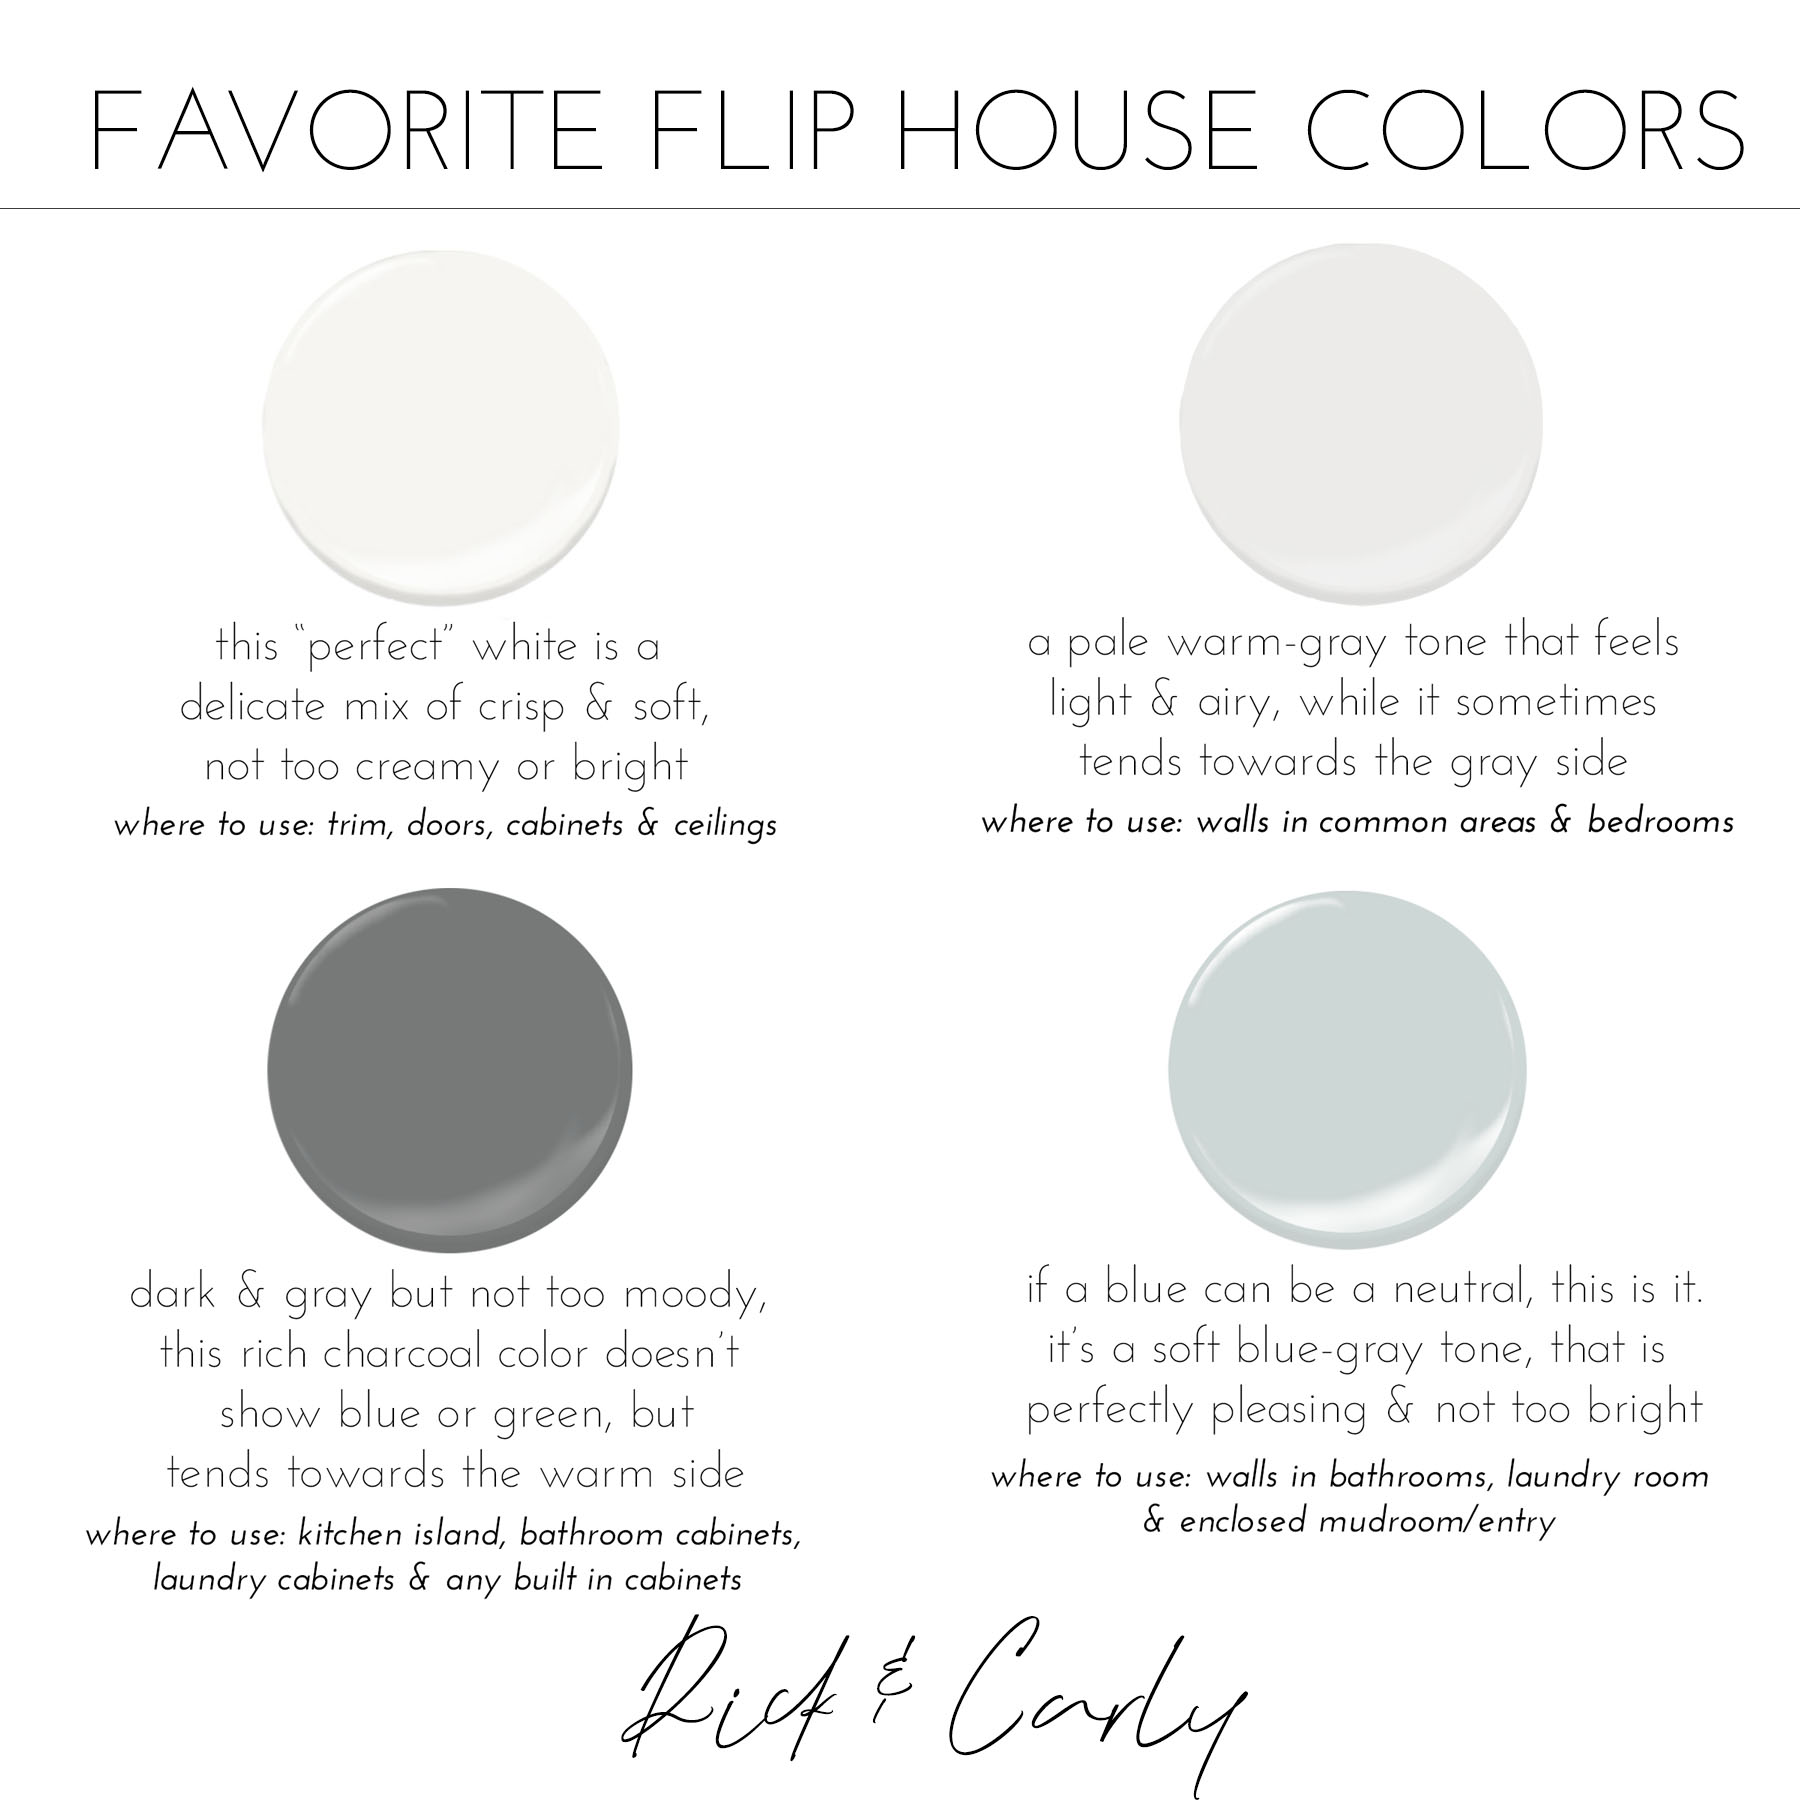 Favorite Flip House Colors